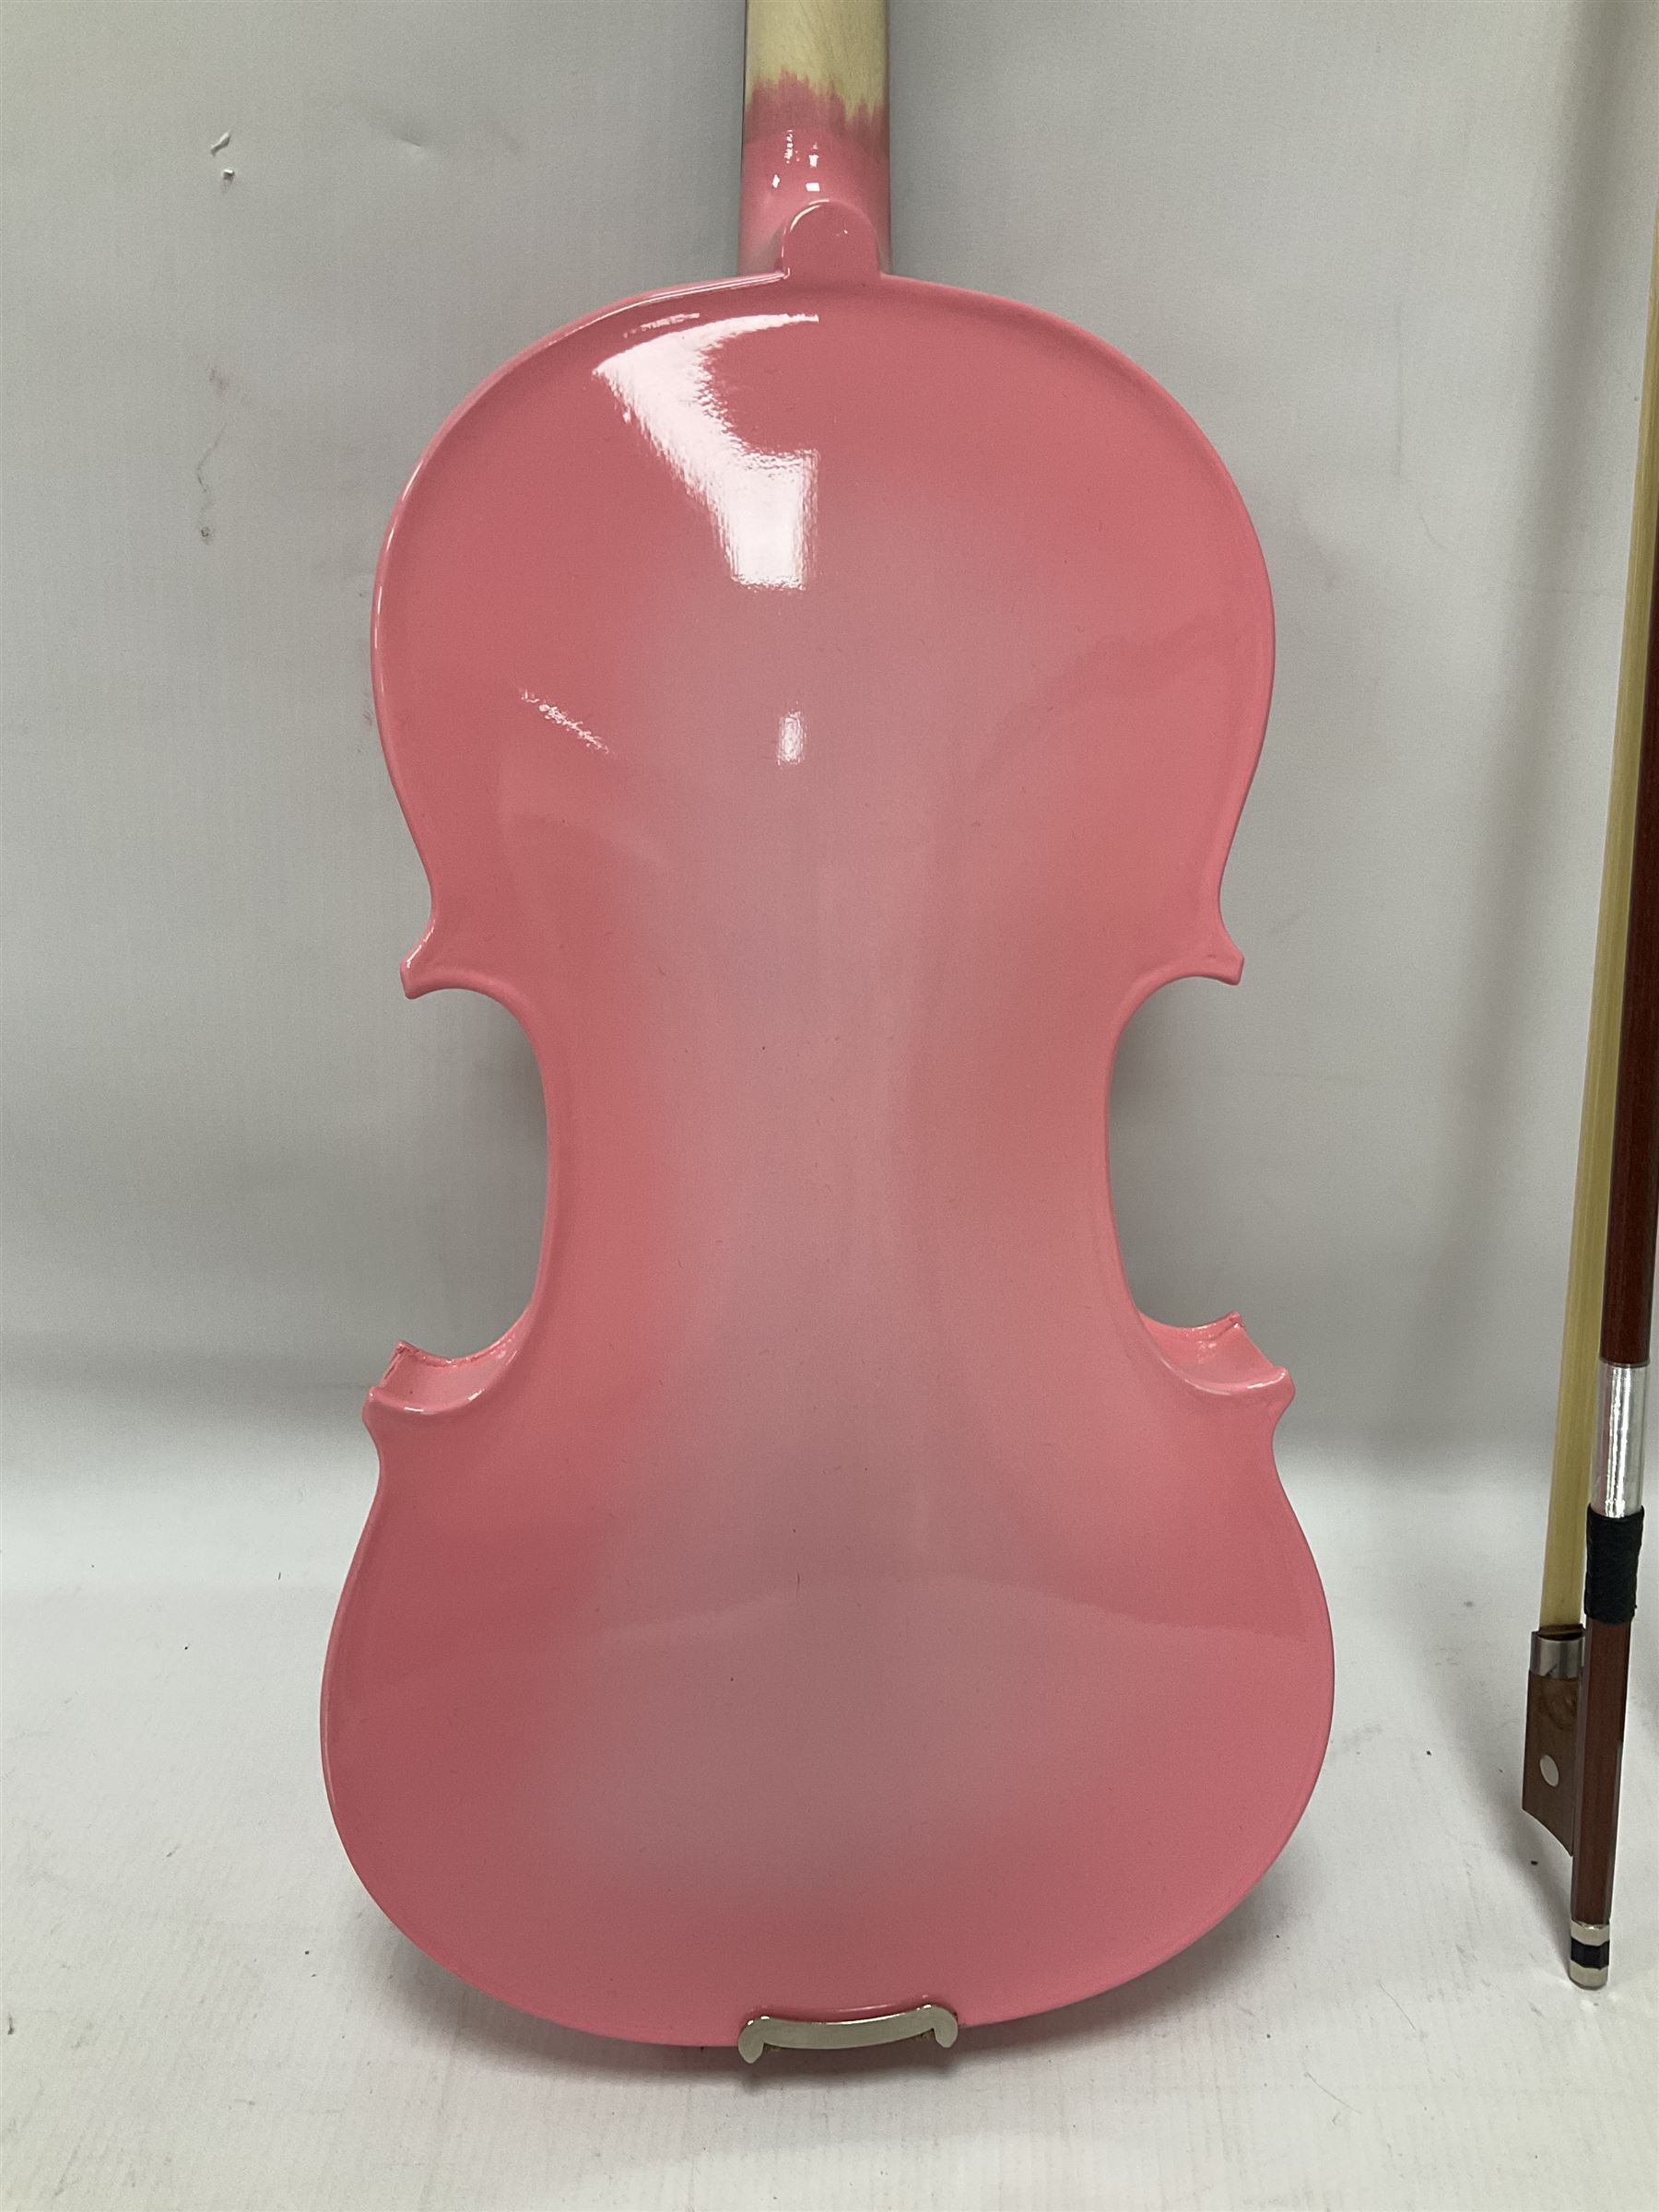 Zest full size pink violin - Image 13 of 32